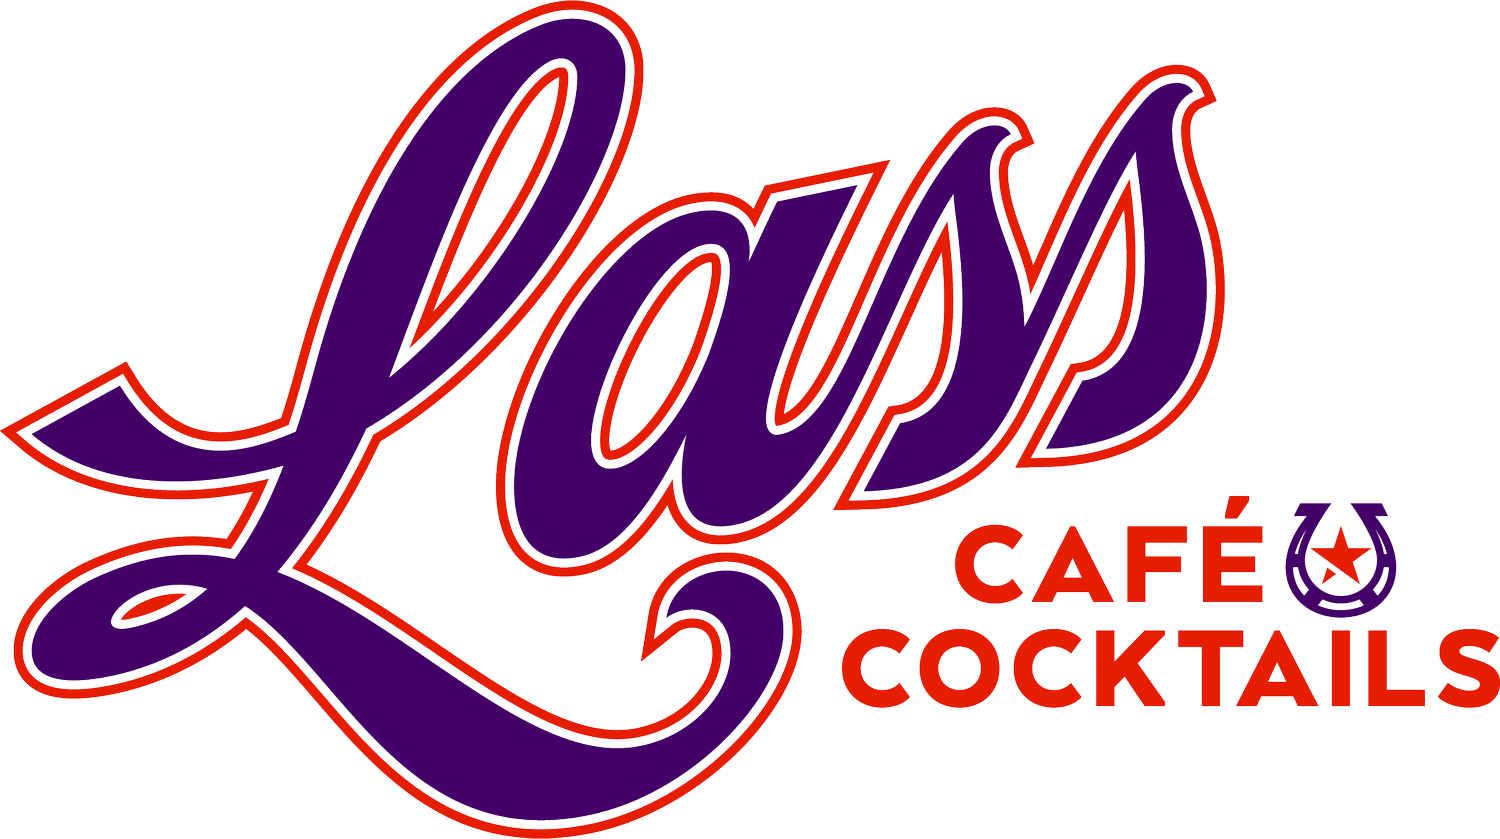 Lass Café and Cocktails